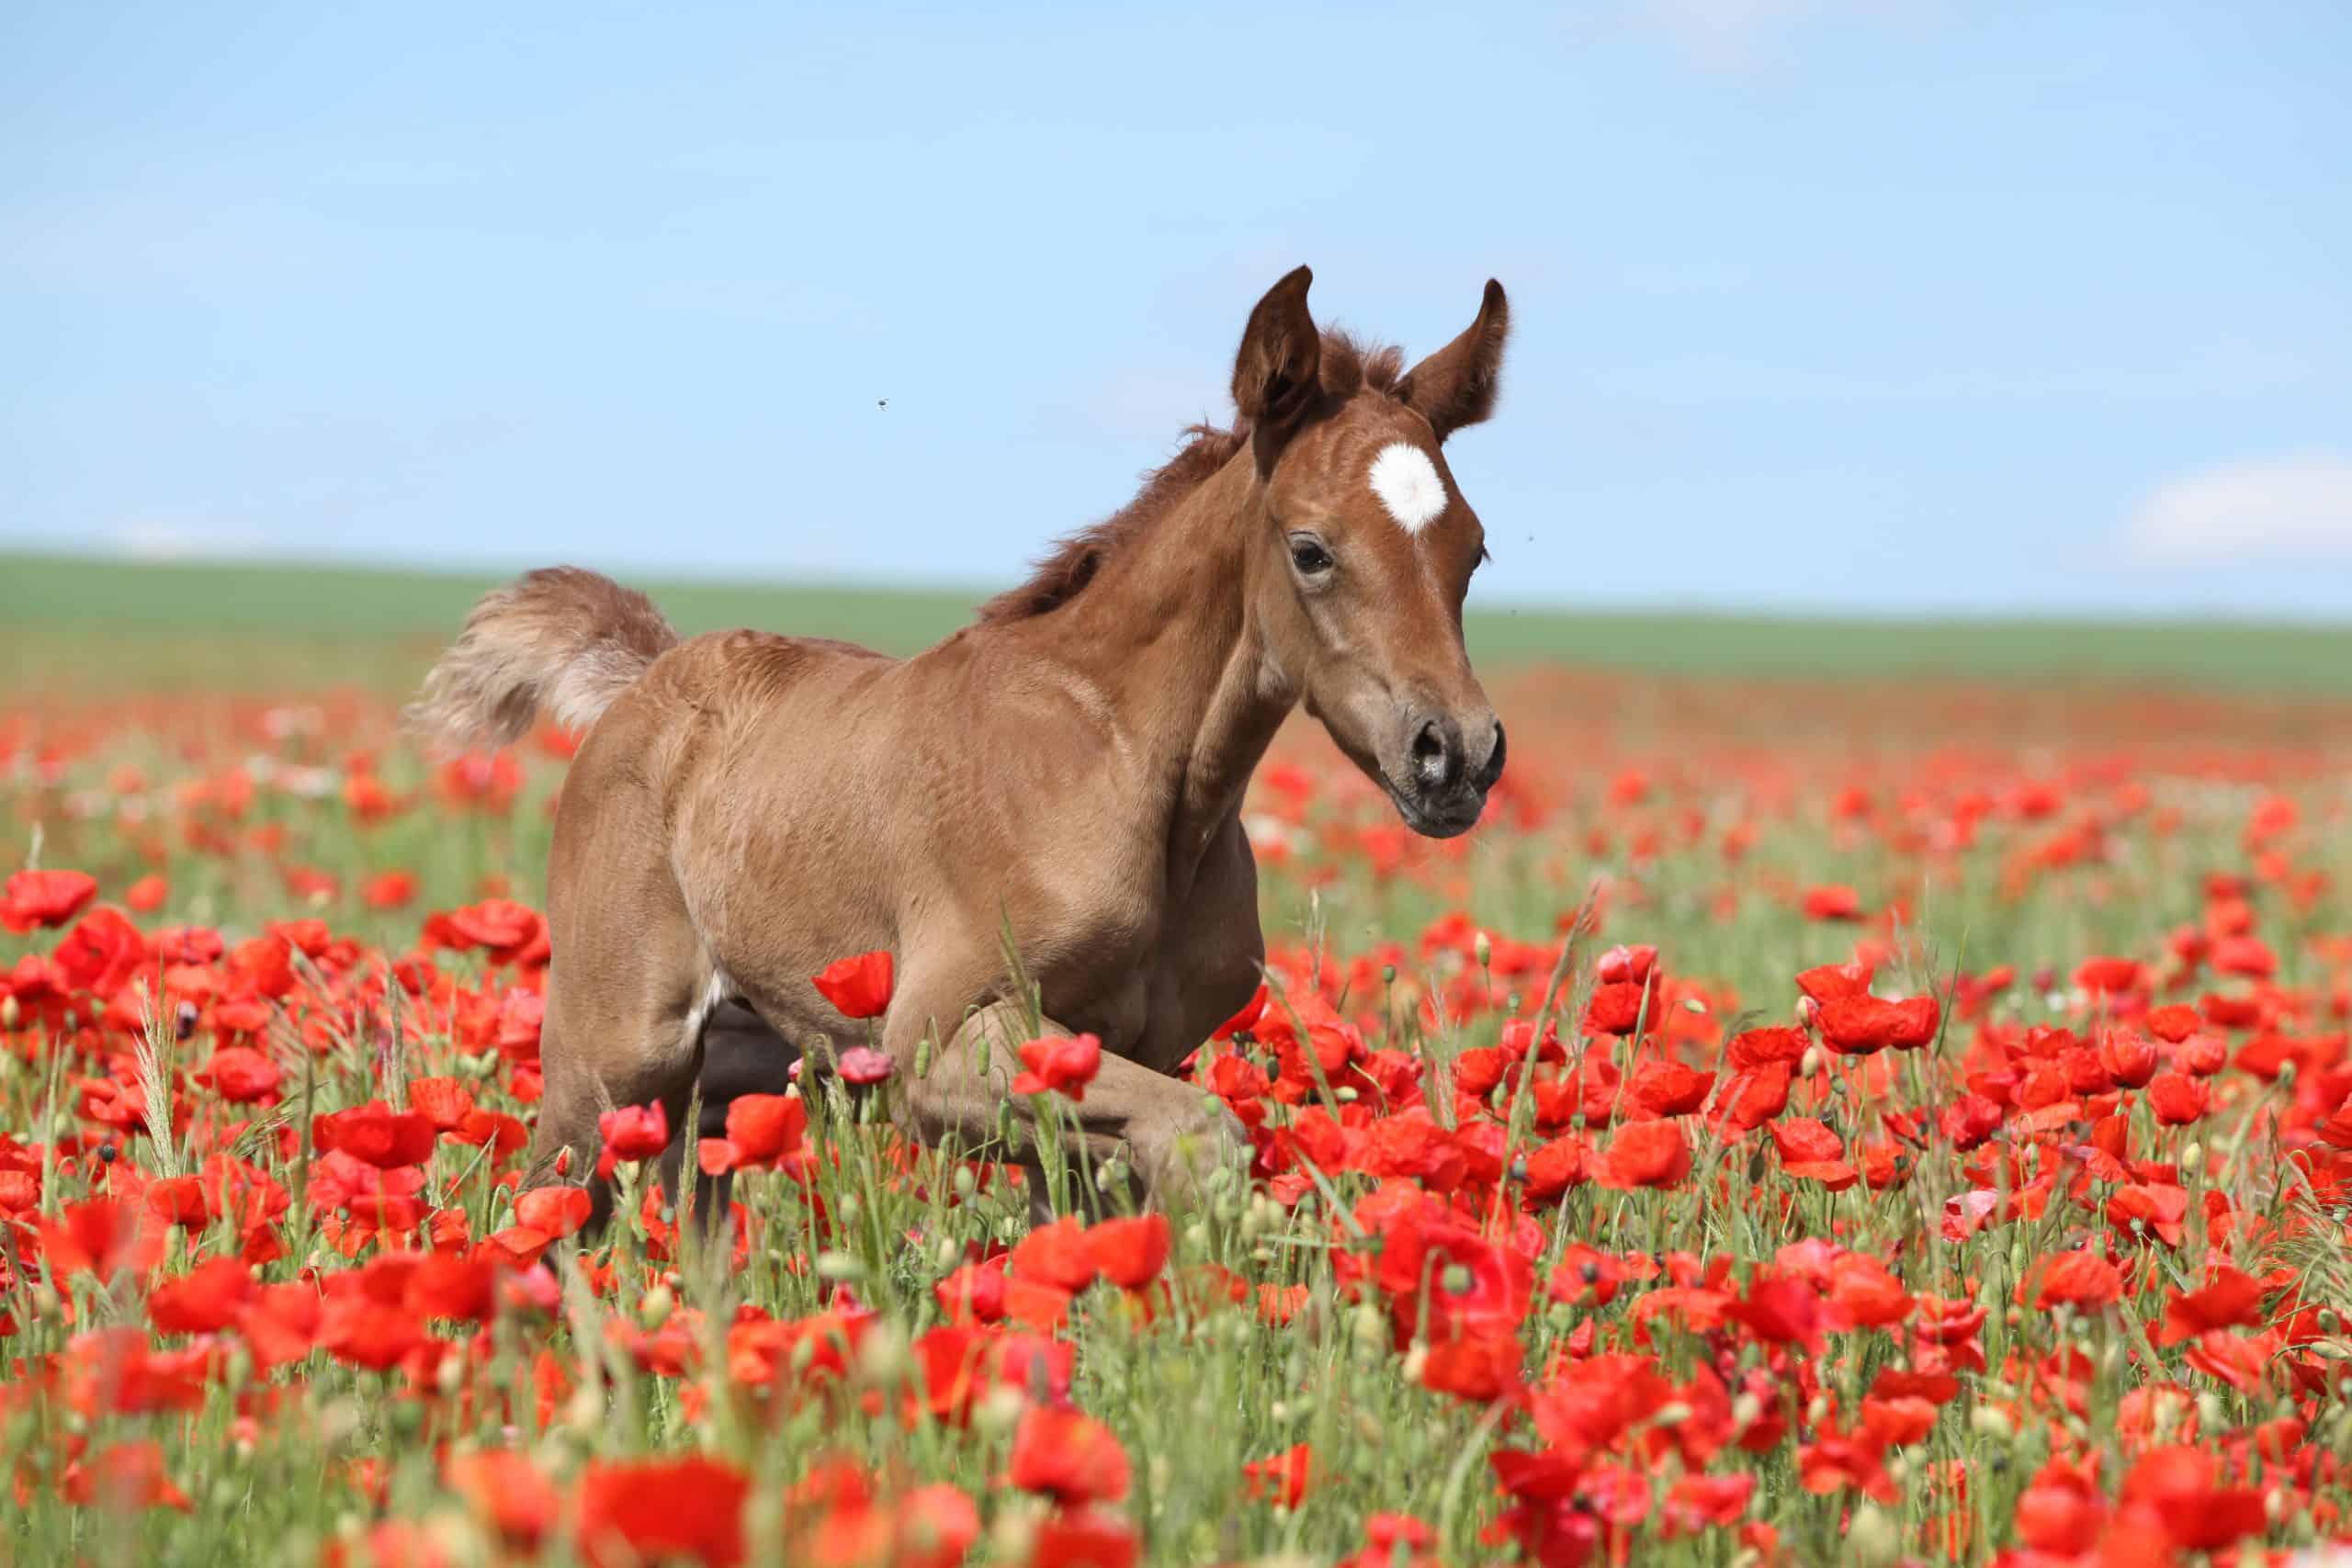 Arabian foal running in red poppy field